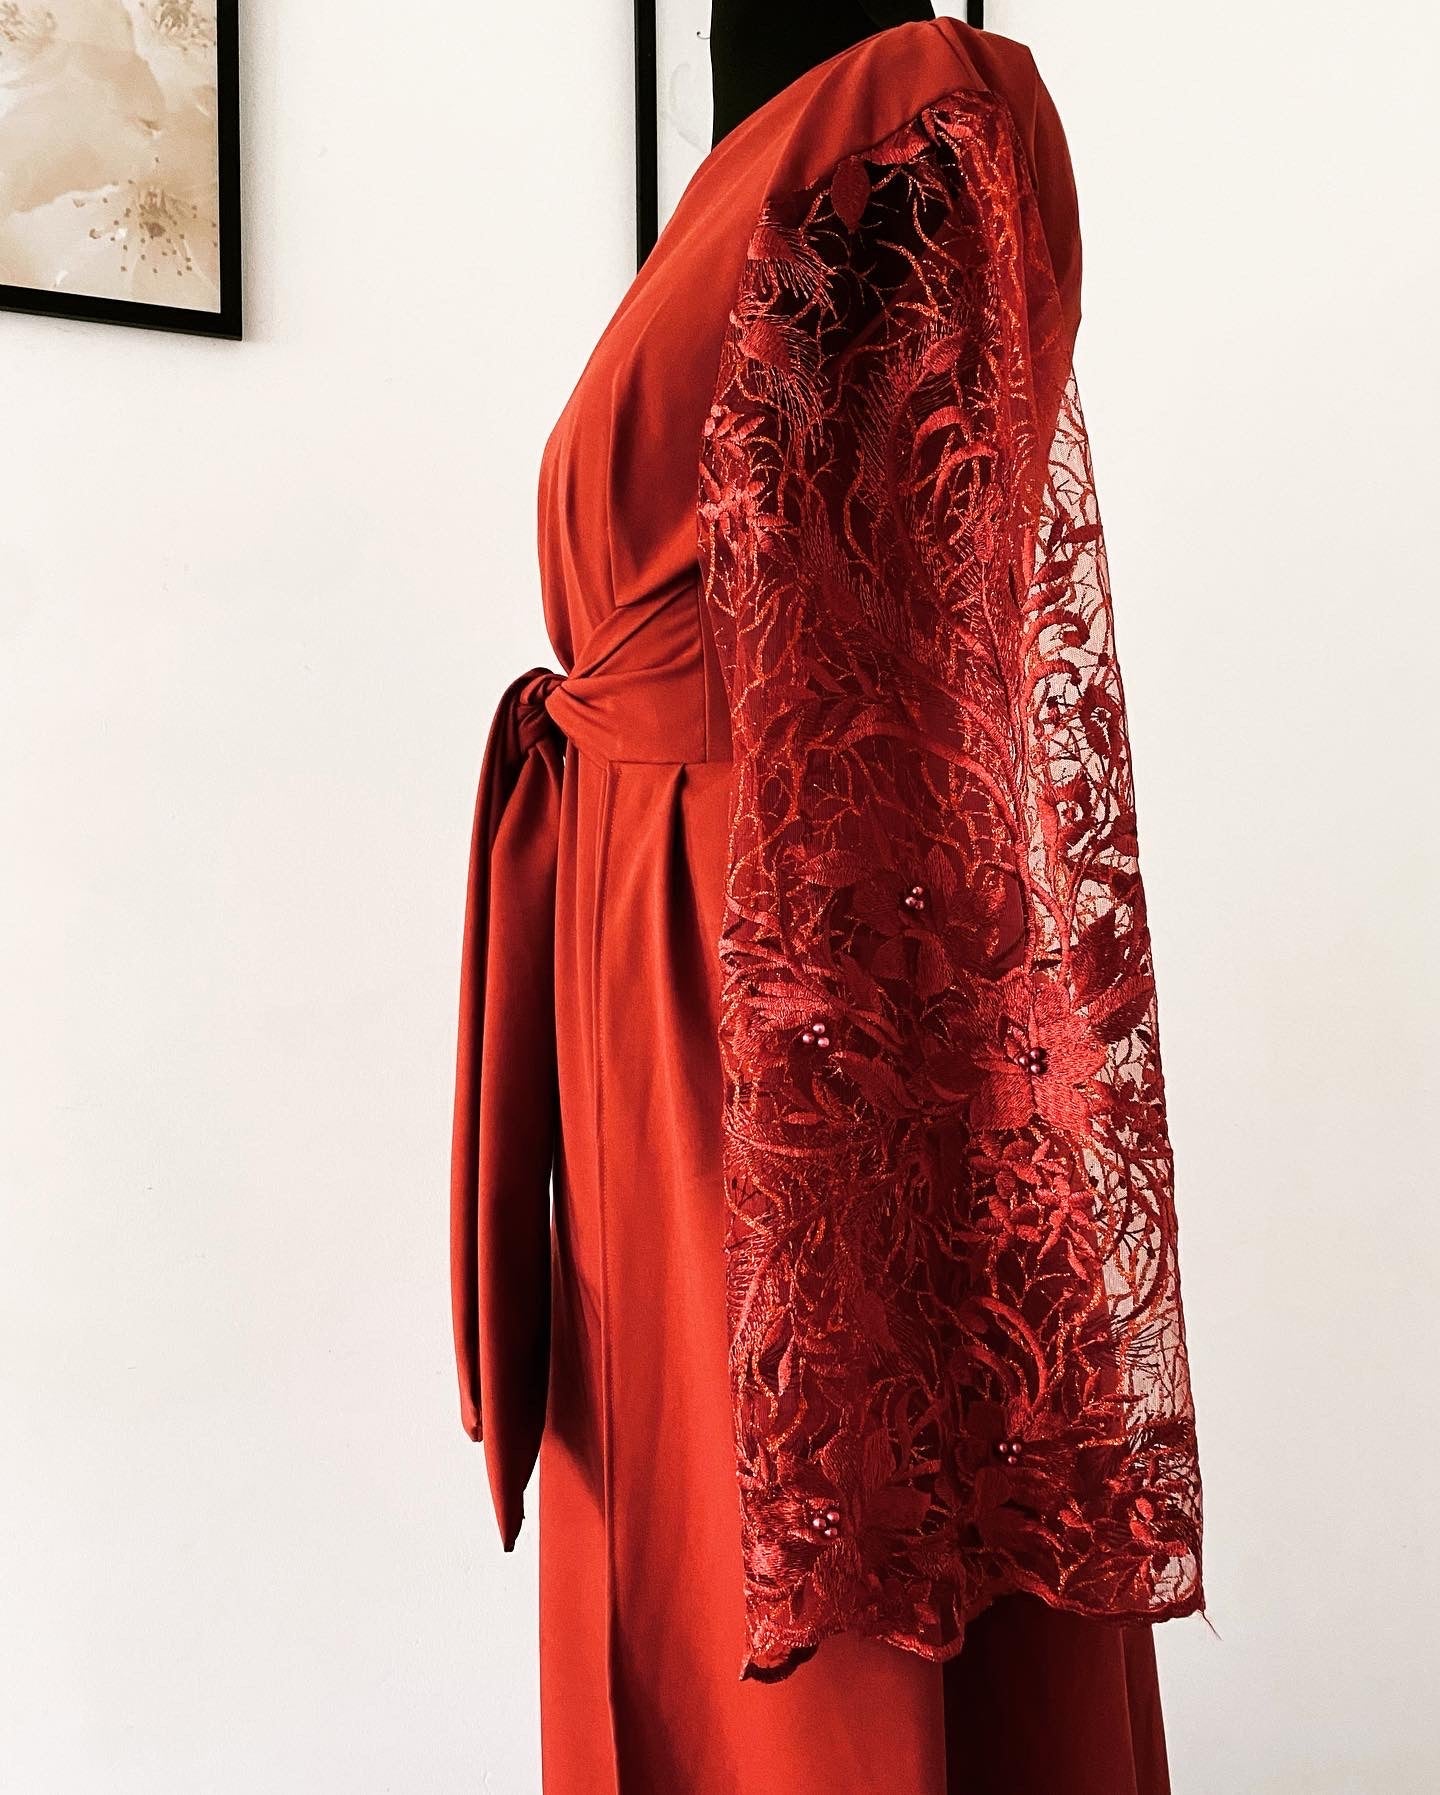 Robe de Soiree Mastoura - Demoiselle d’honneur rouille manche longue - Kaysol Couture